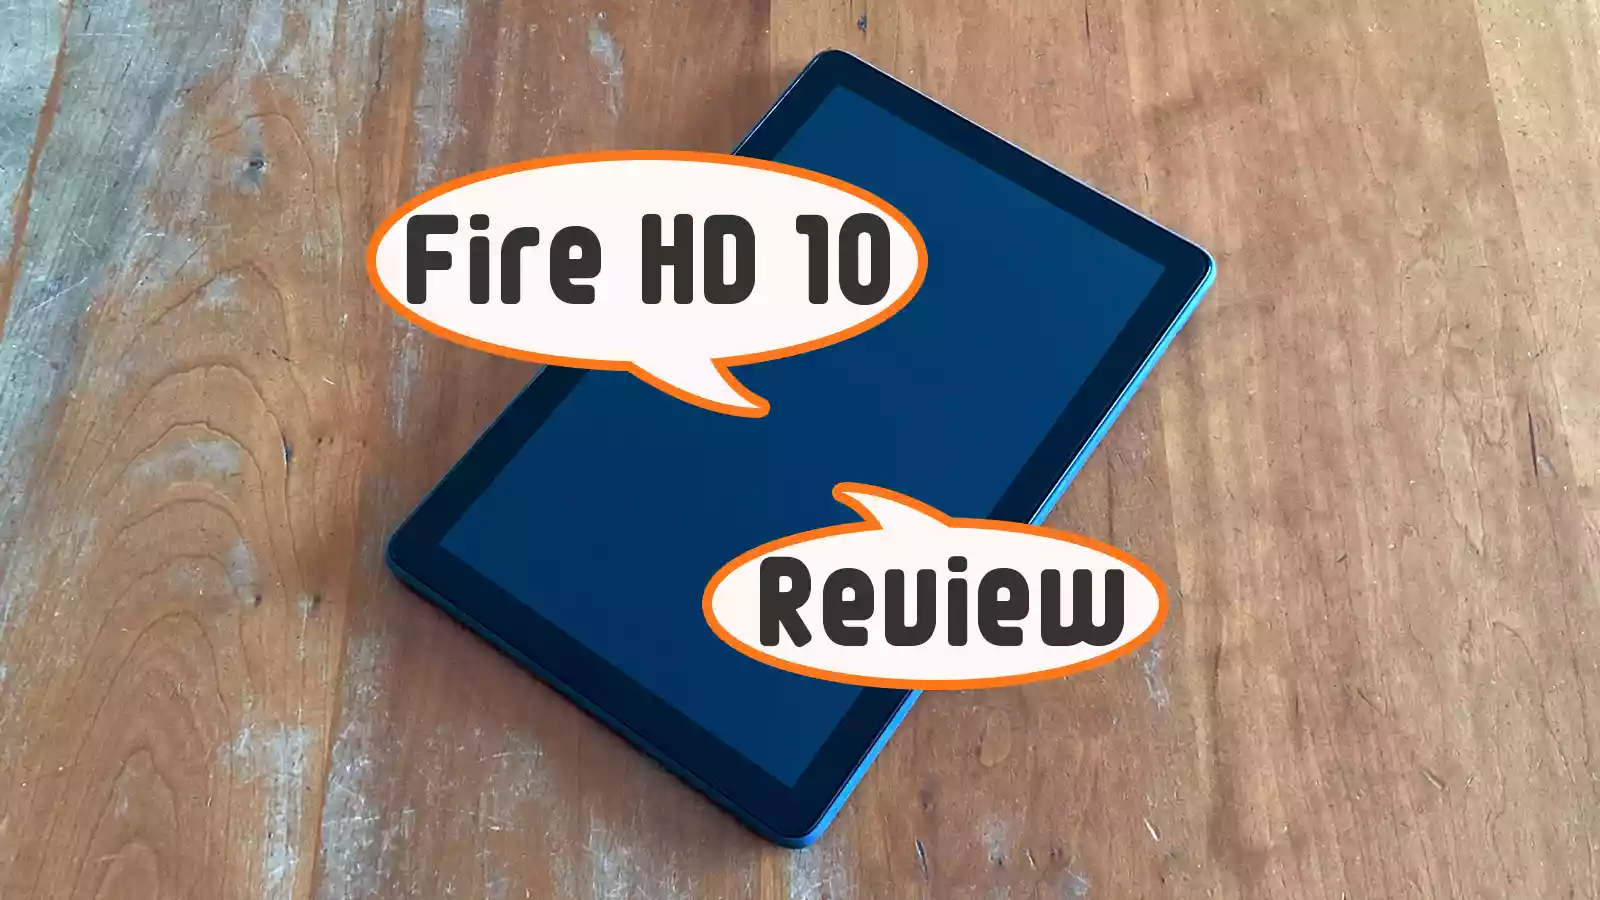 第11世代 2021年モデル】Fire HD 10 タブレット新旧モデル比較レビュー 